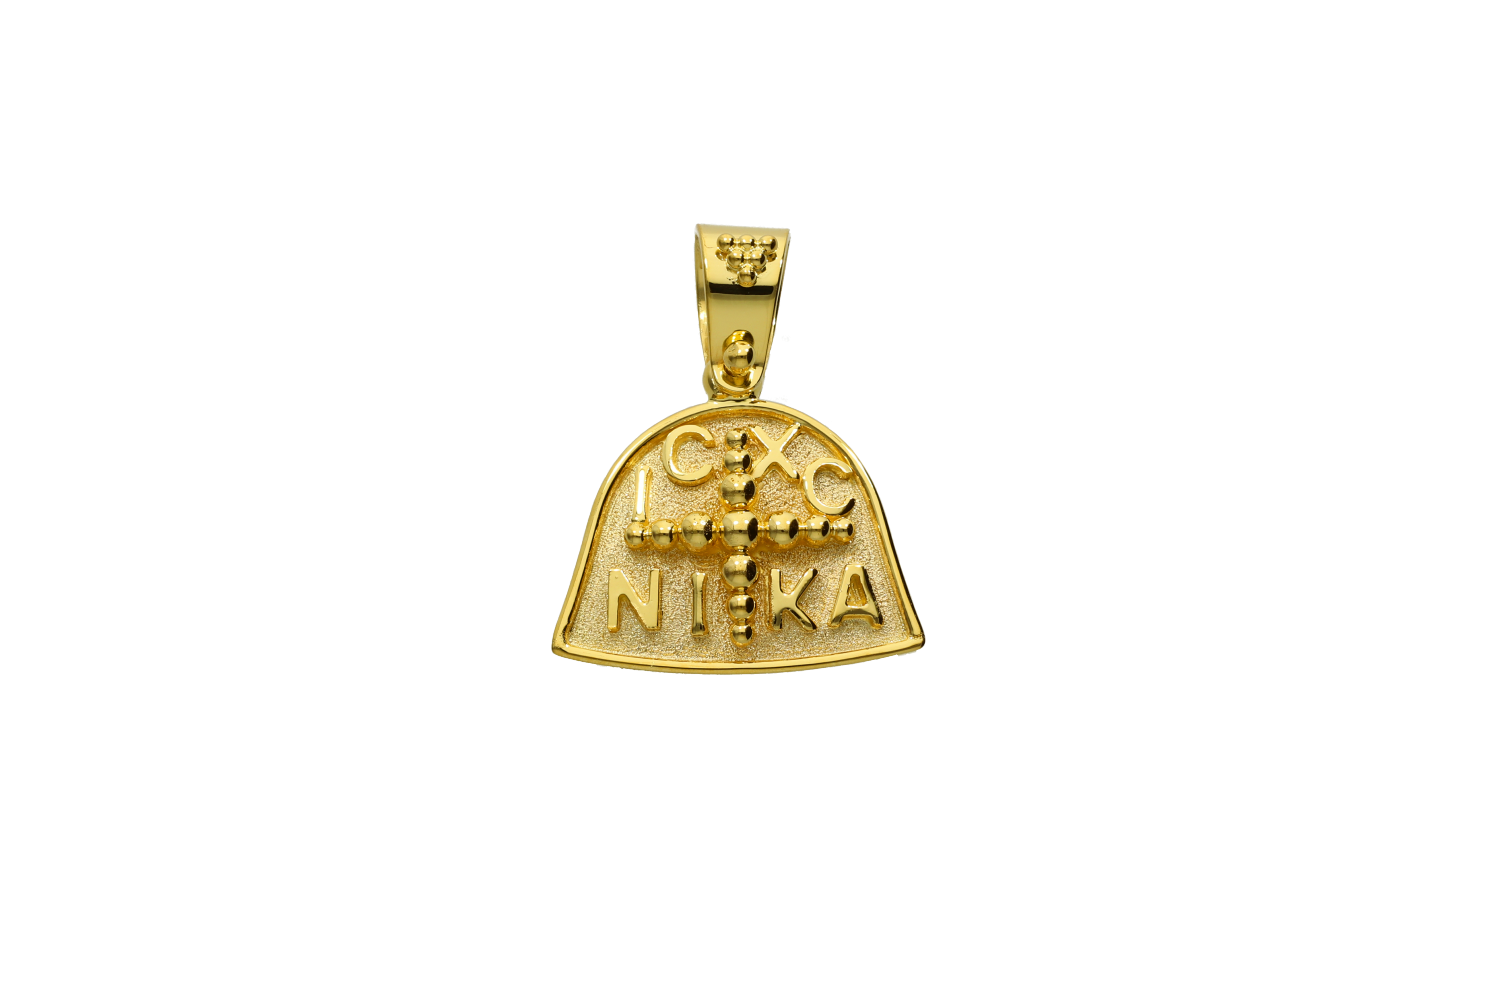 Κωνσταντινάτο σε χρυσό 18Κ μοντέρνο σχέδιο ματ με κοκκίδωση IC NIKA 